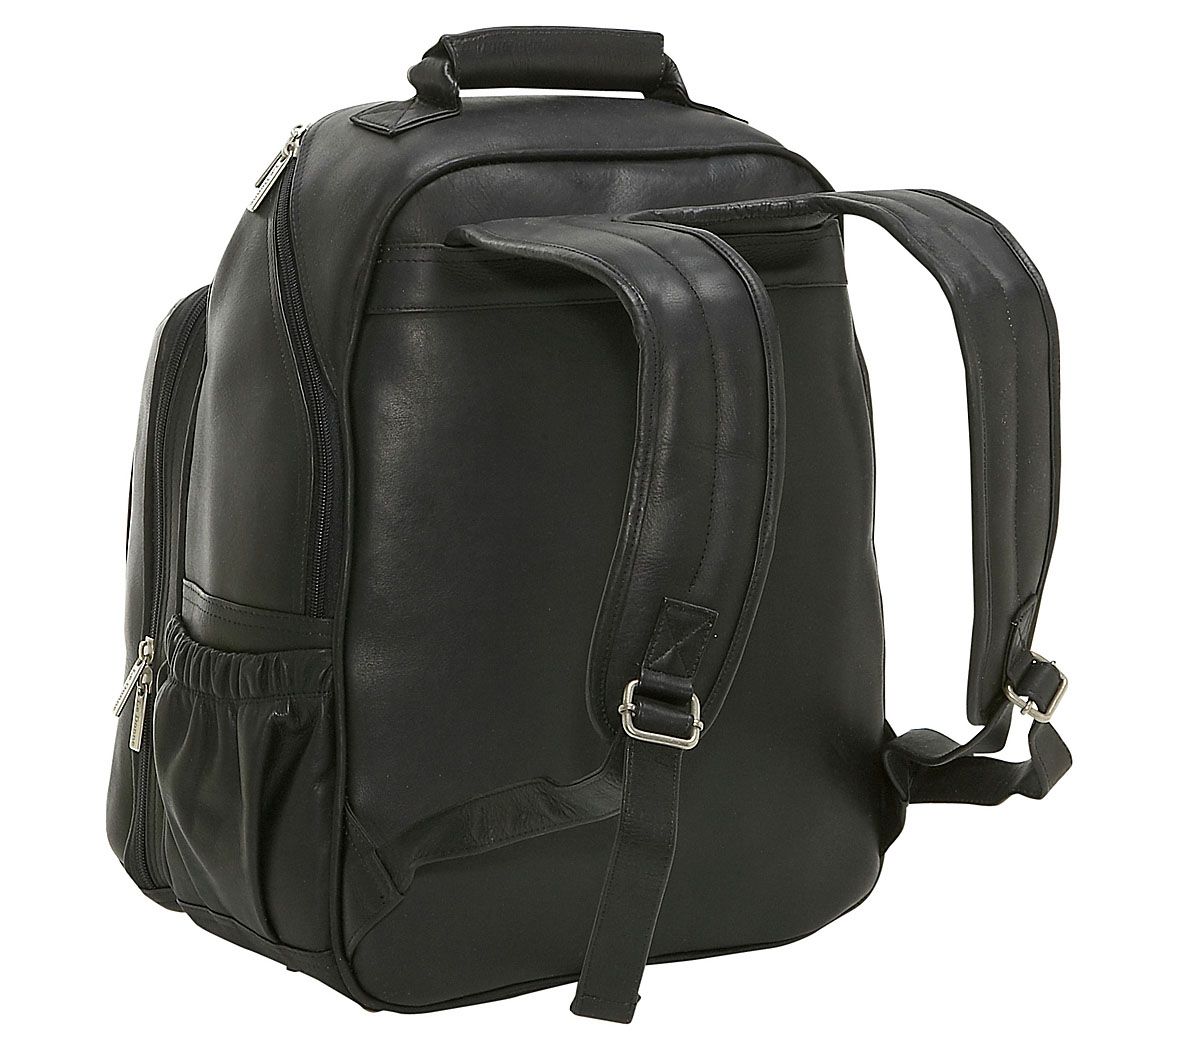 Le Donne Leather Large Laptop Backpack - QVC.com